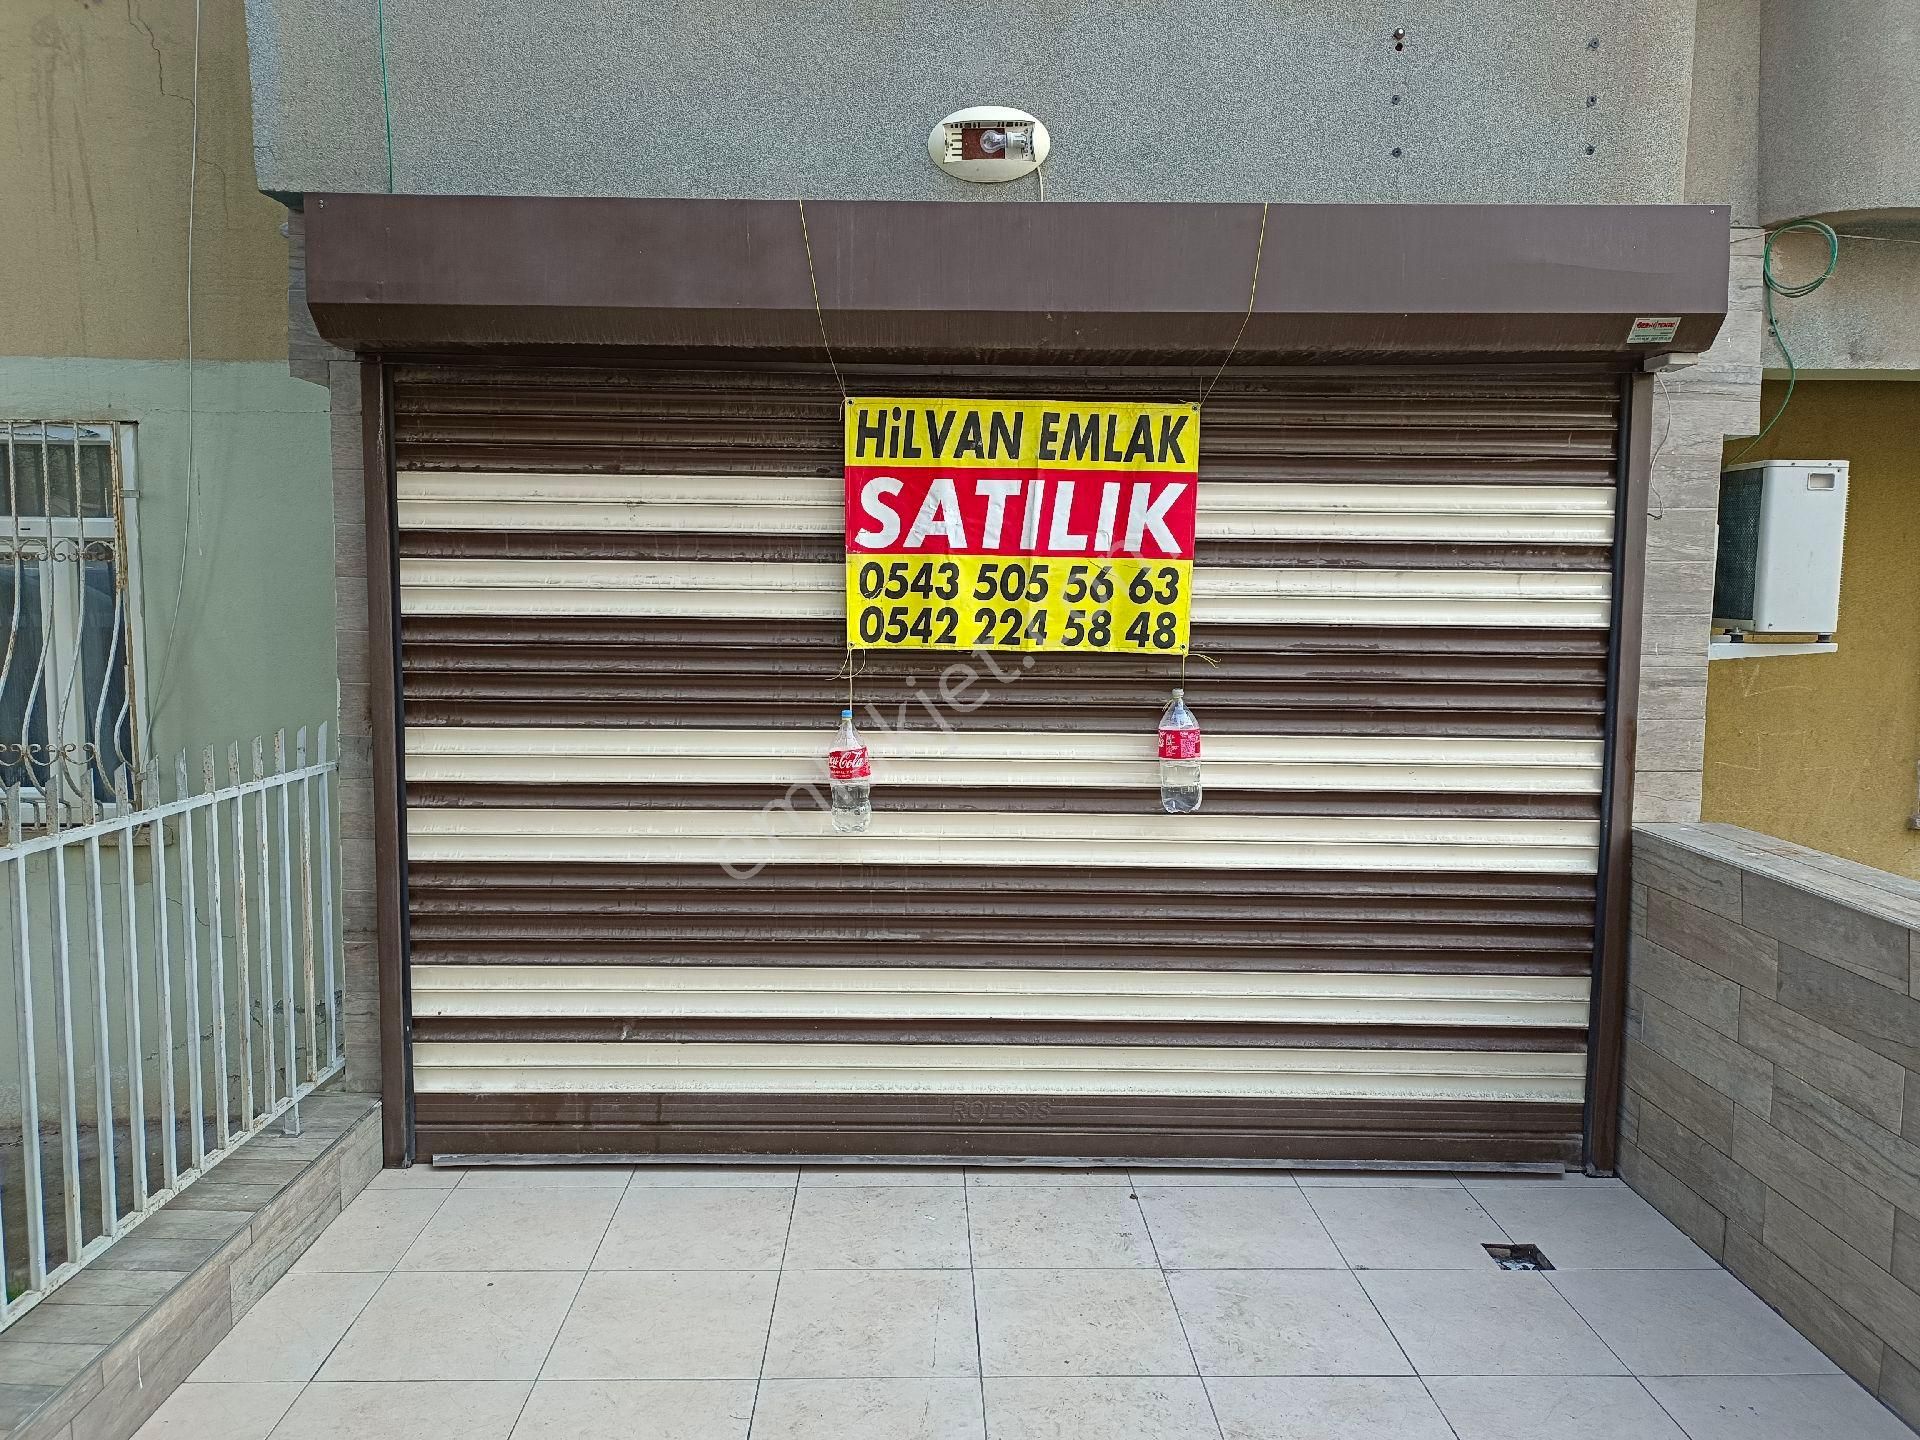 Haliliye Ulubatlı Satılık Dükkan & Mağaza HİLVAN AUTO EMLAK 